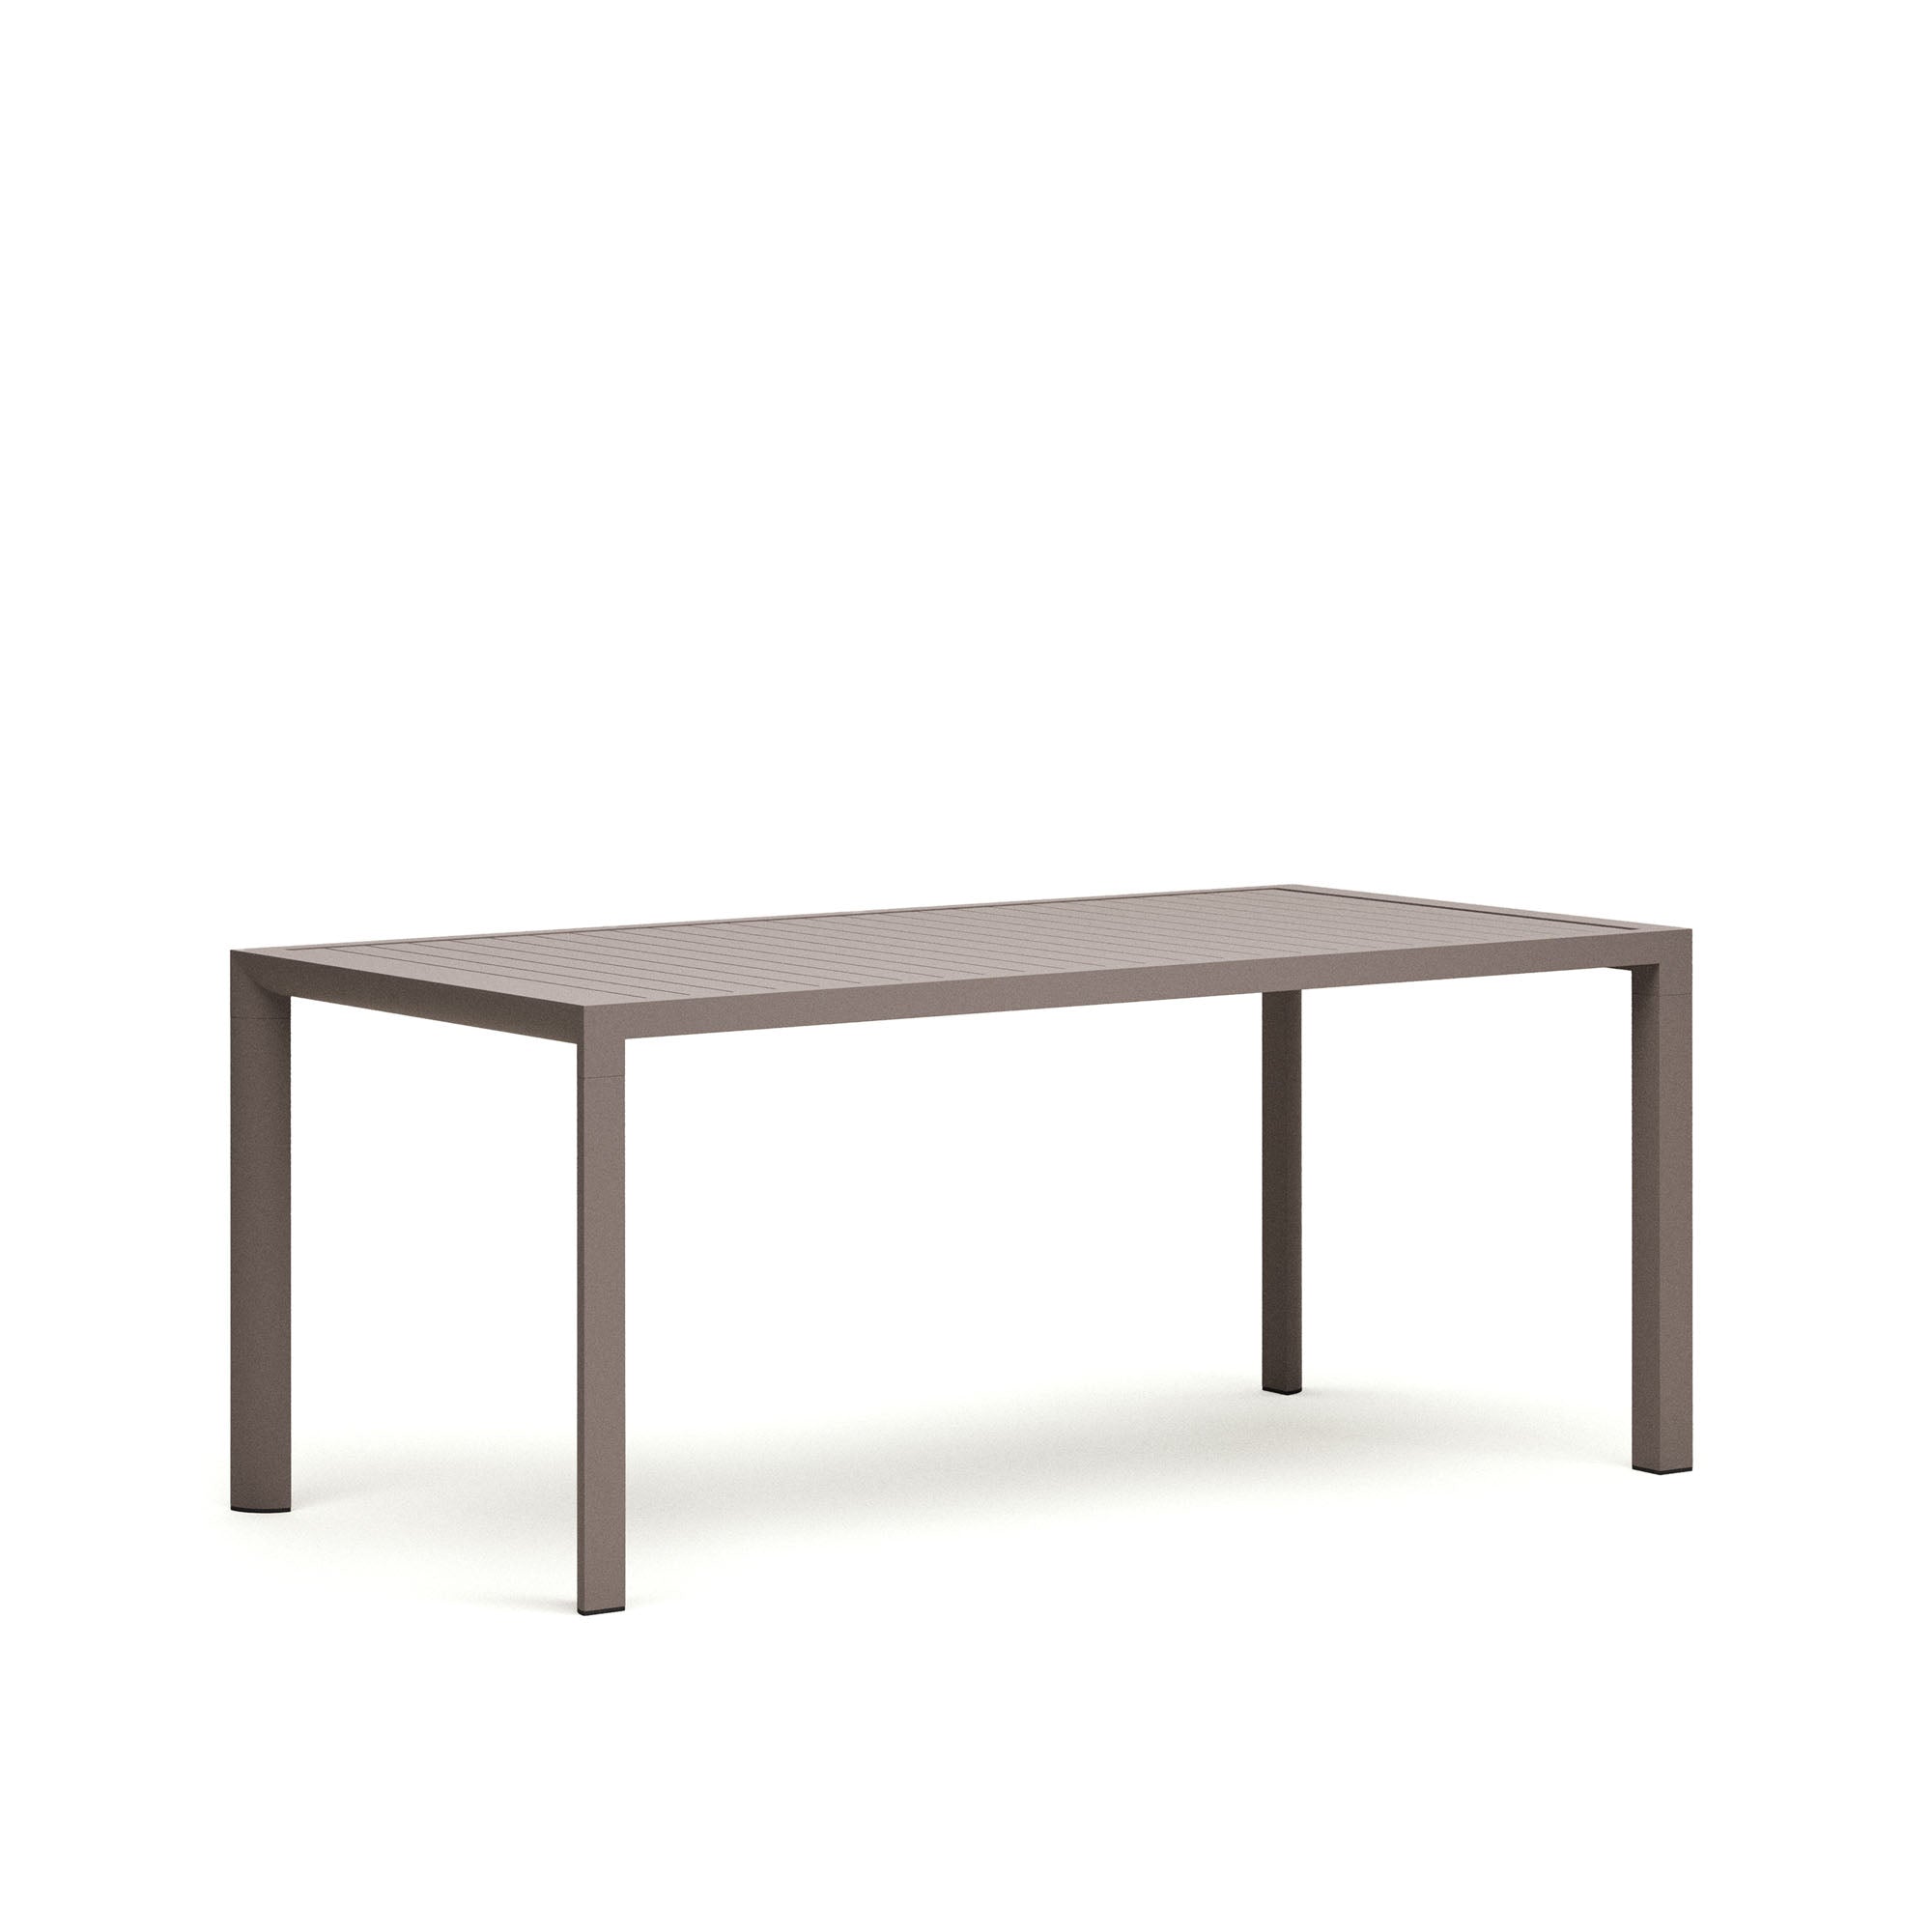 Culip alumínium kültéri asztal, 180 x 90 cm, barna színű porszórt bevonattal